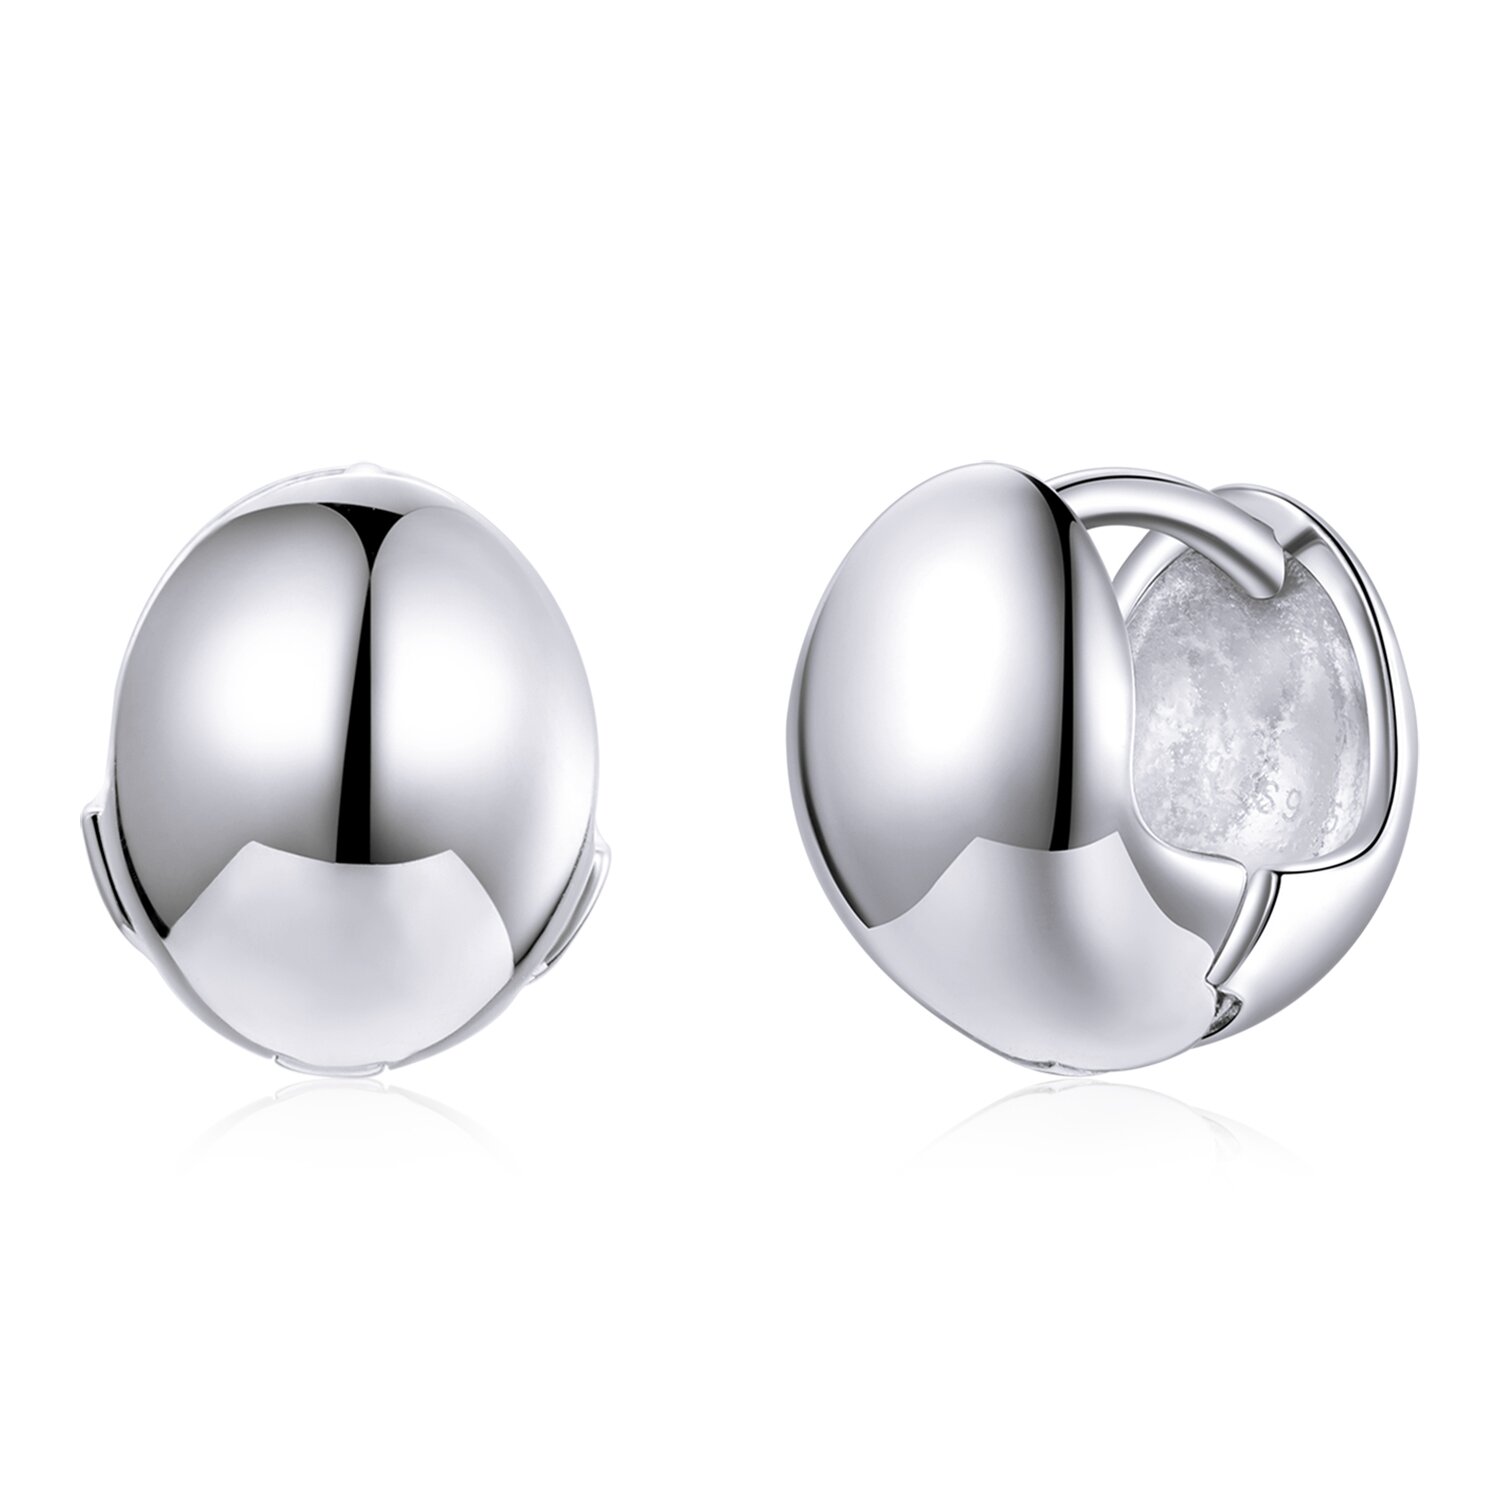 Cercei din argint Simple Balls la pret fara cncurenta